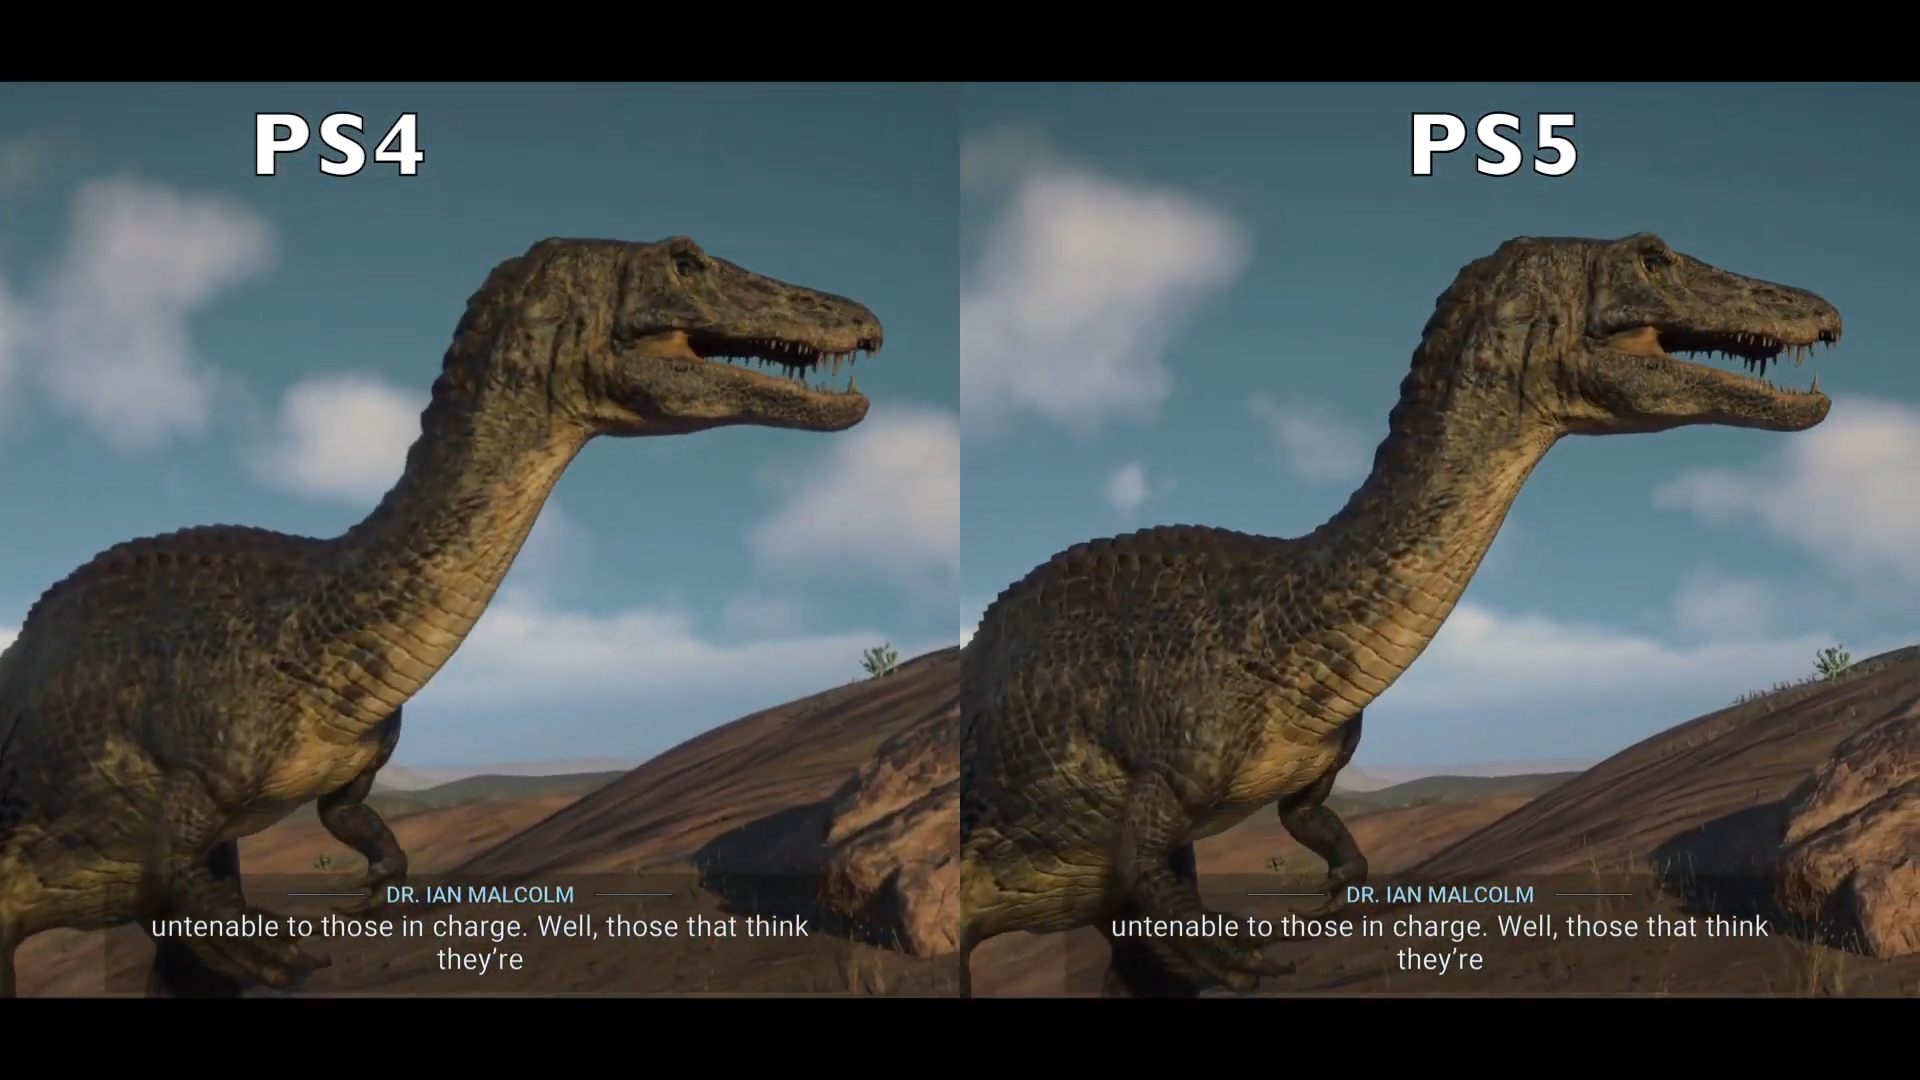 RVCS Games - Jurassic World Evolution 2 PS4/PS5 - Pontos Primária